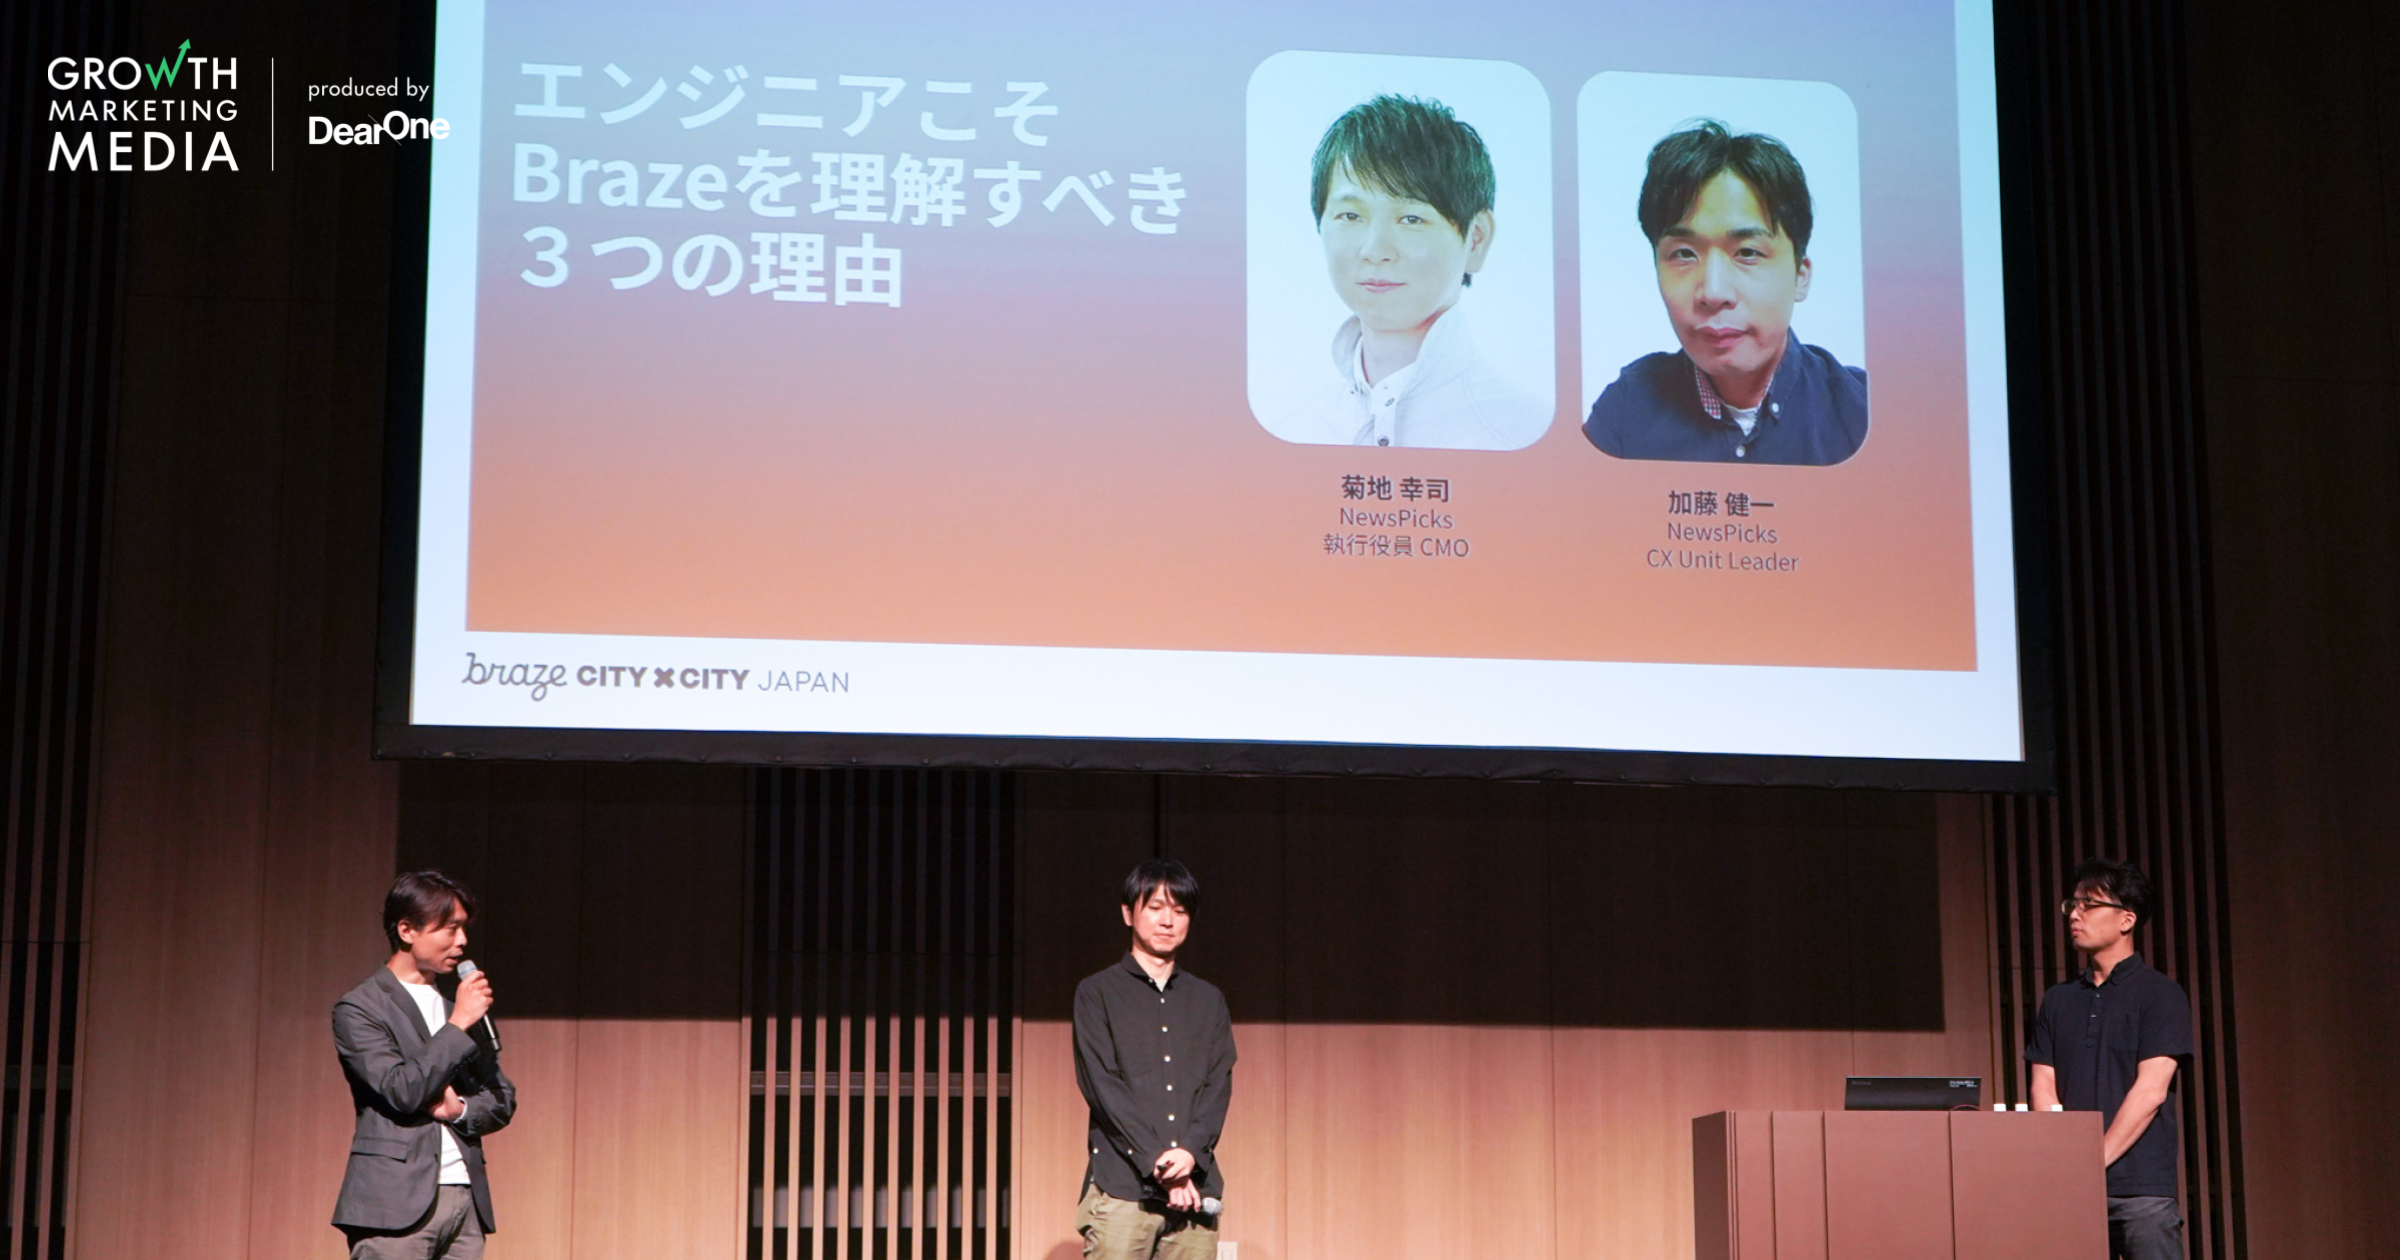 Braze City×City Japan｜エンジニア工数を削減してユーザー体験を最適化できる！エンジニアこそBrazeを理解するべき 3つの理由【イベントレポート】